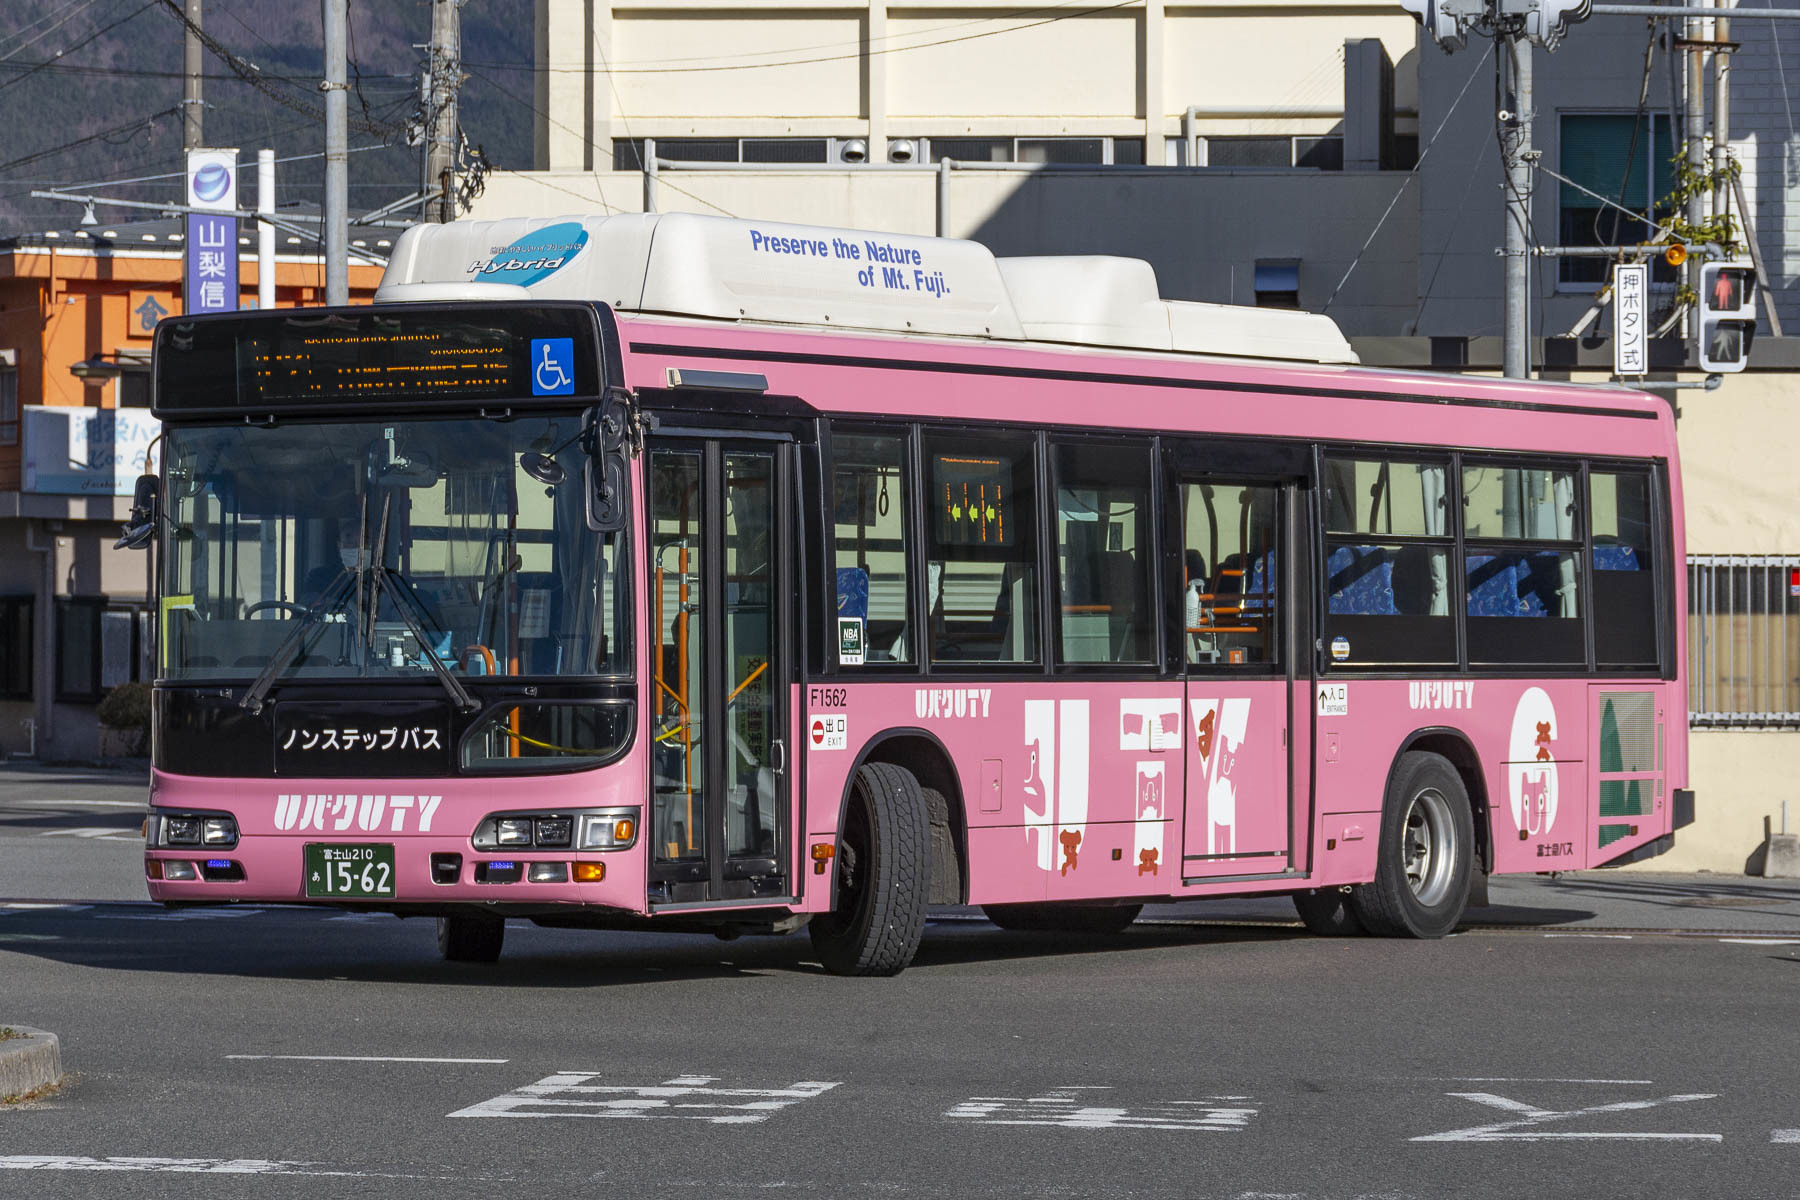 富士急バス / Re:ゼロから始める富士急ハイランド生活ラッピングバス_d0226909_12474116.jpg